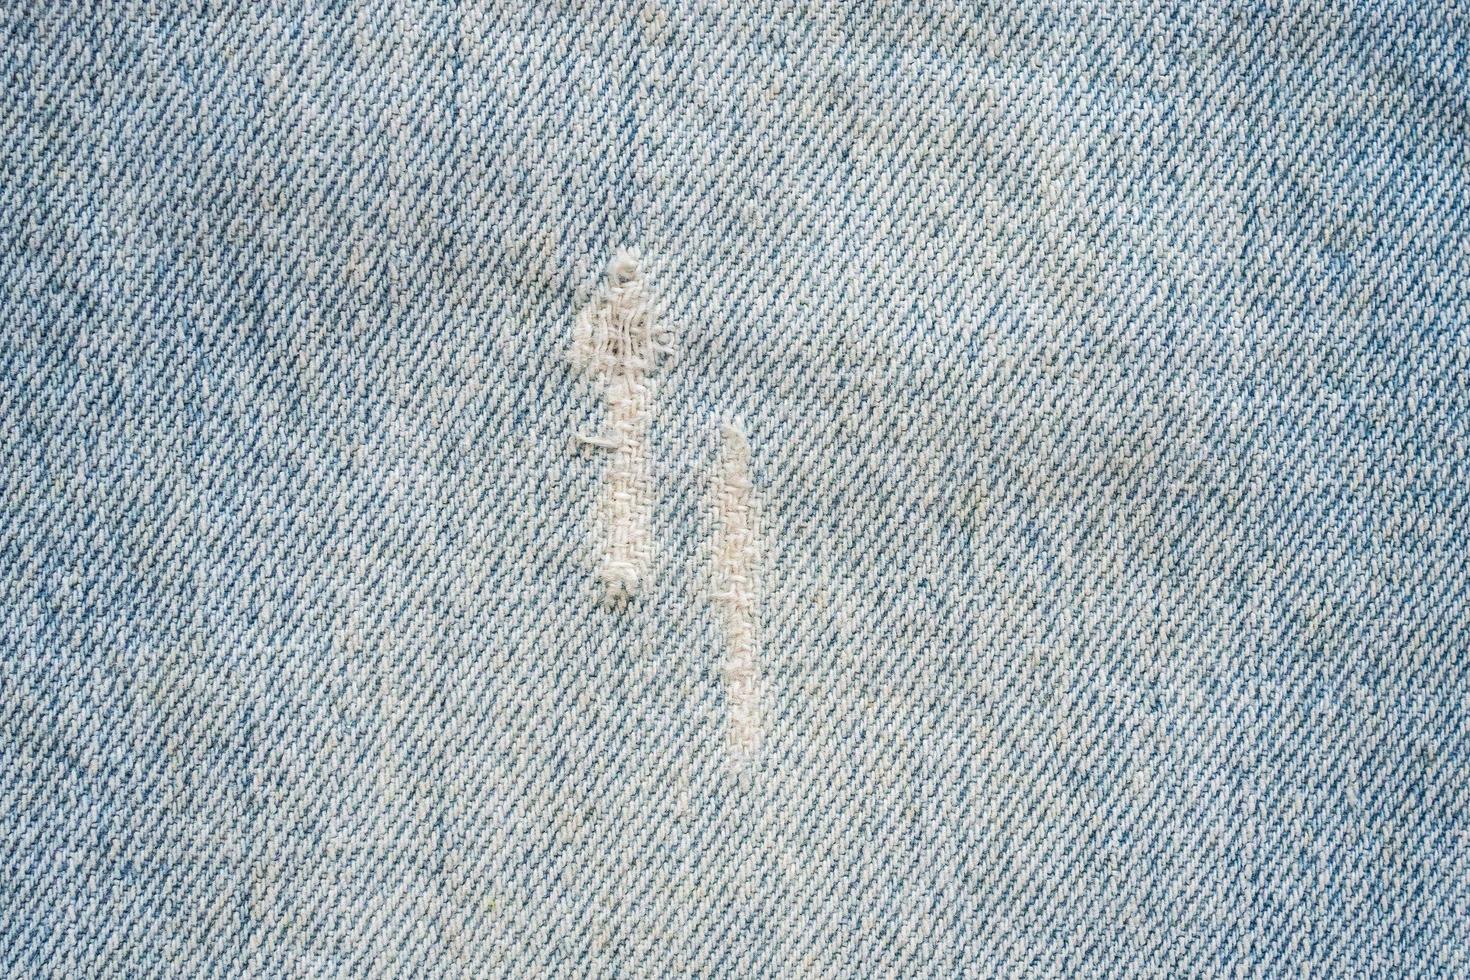 fond de texture de jeans denim bleu photo